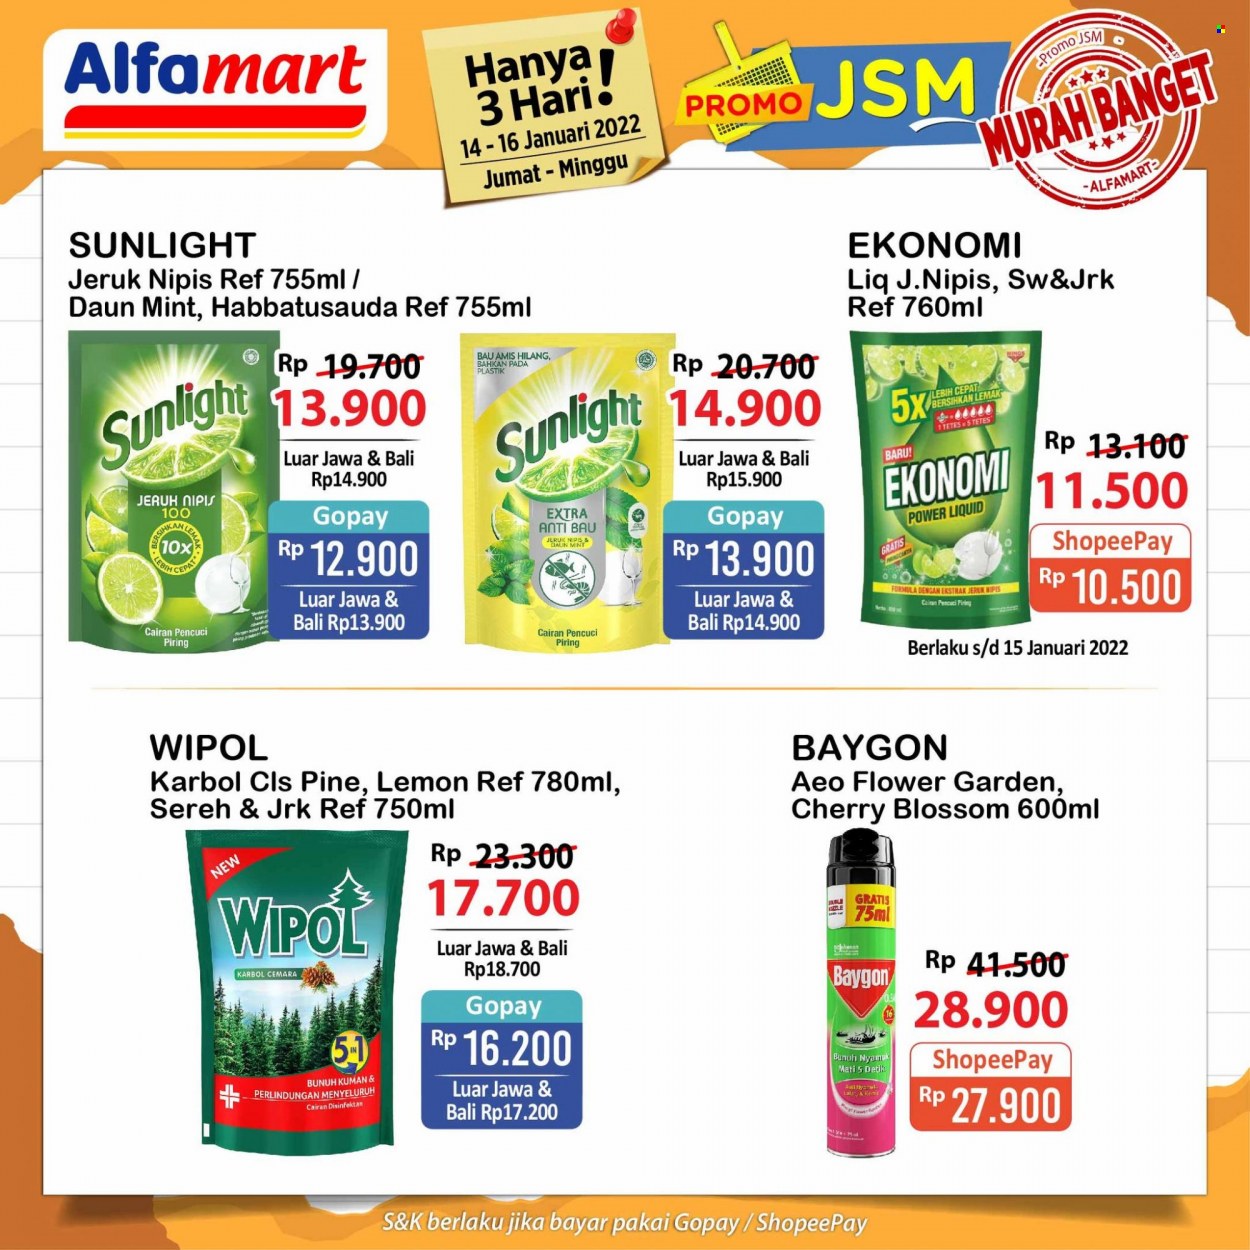 Promo Alfamart - 01/14/2022 - 01/16/2022 - Produk diskon - wipol, sunlight, pine, piring, lemon, mint, jeruk, jeruk nipis, baygon. Halaman 2.